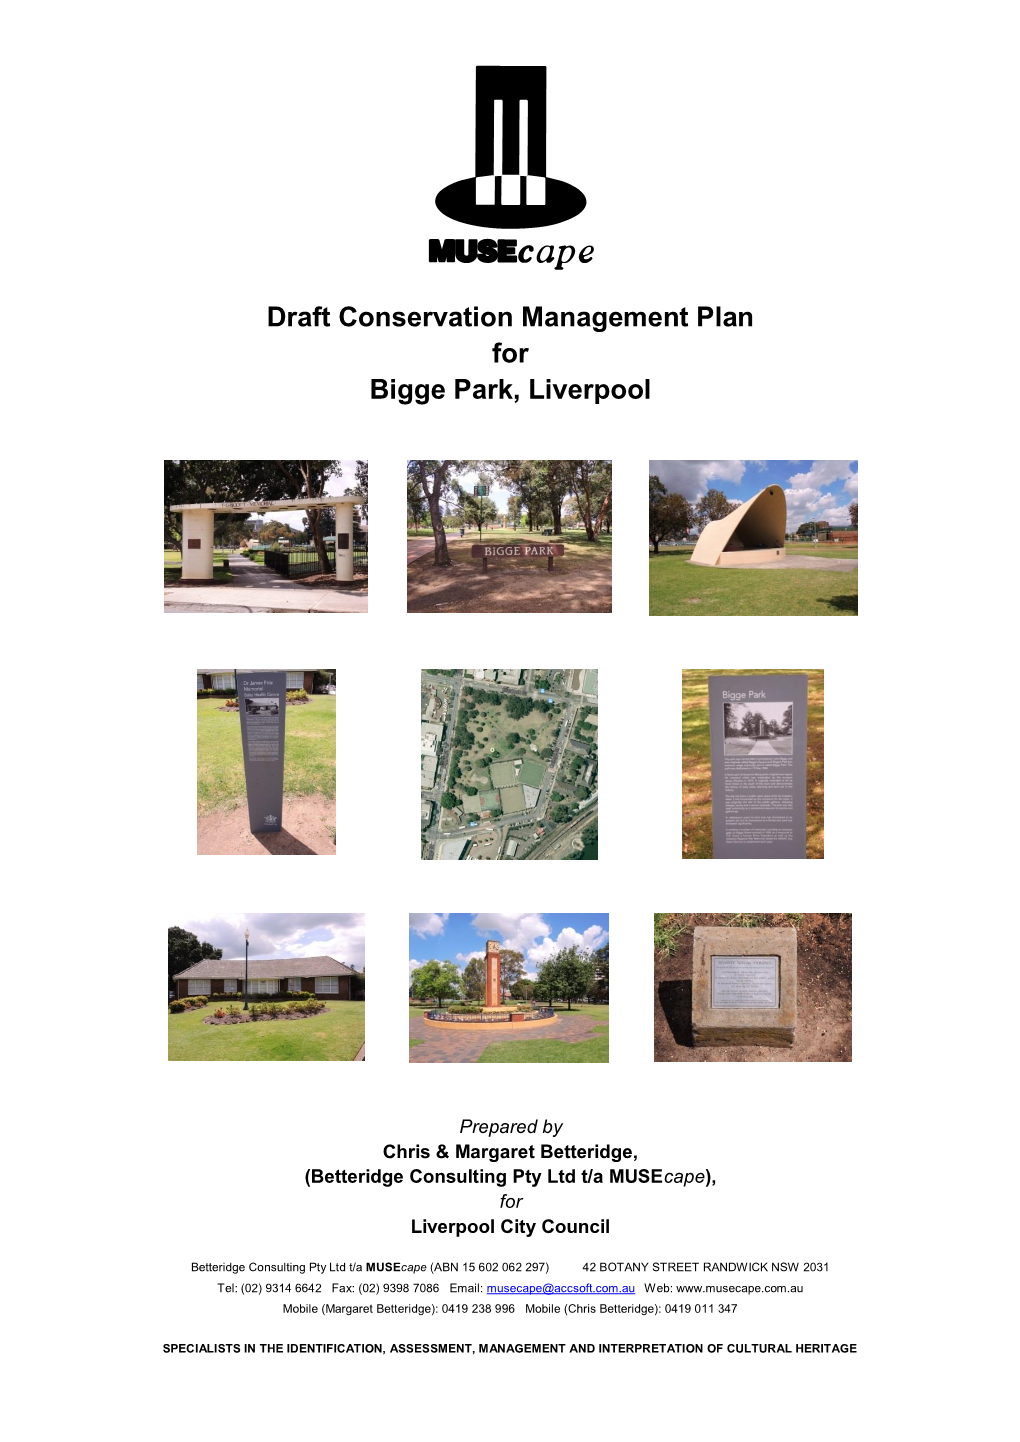 Draft Conservation Management Plan for Bigge Park, Liverpool